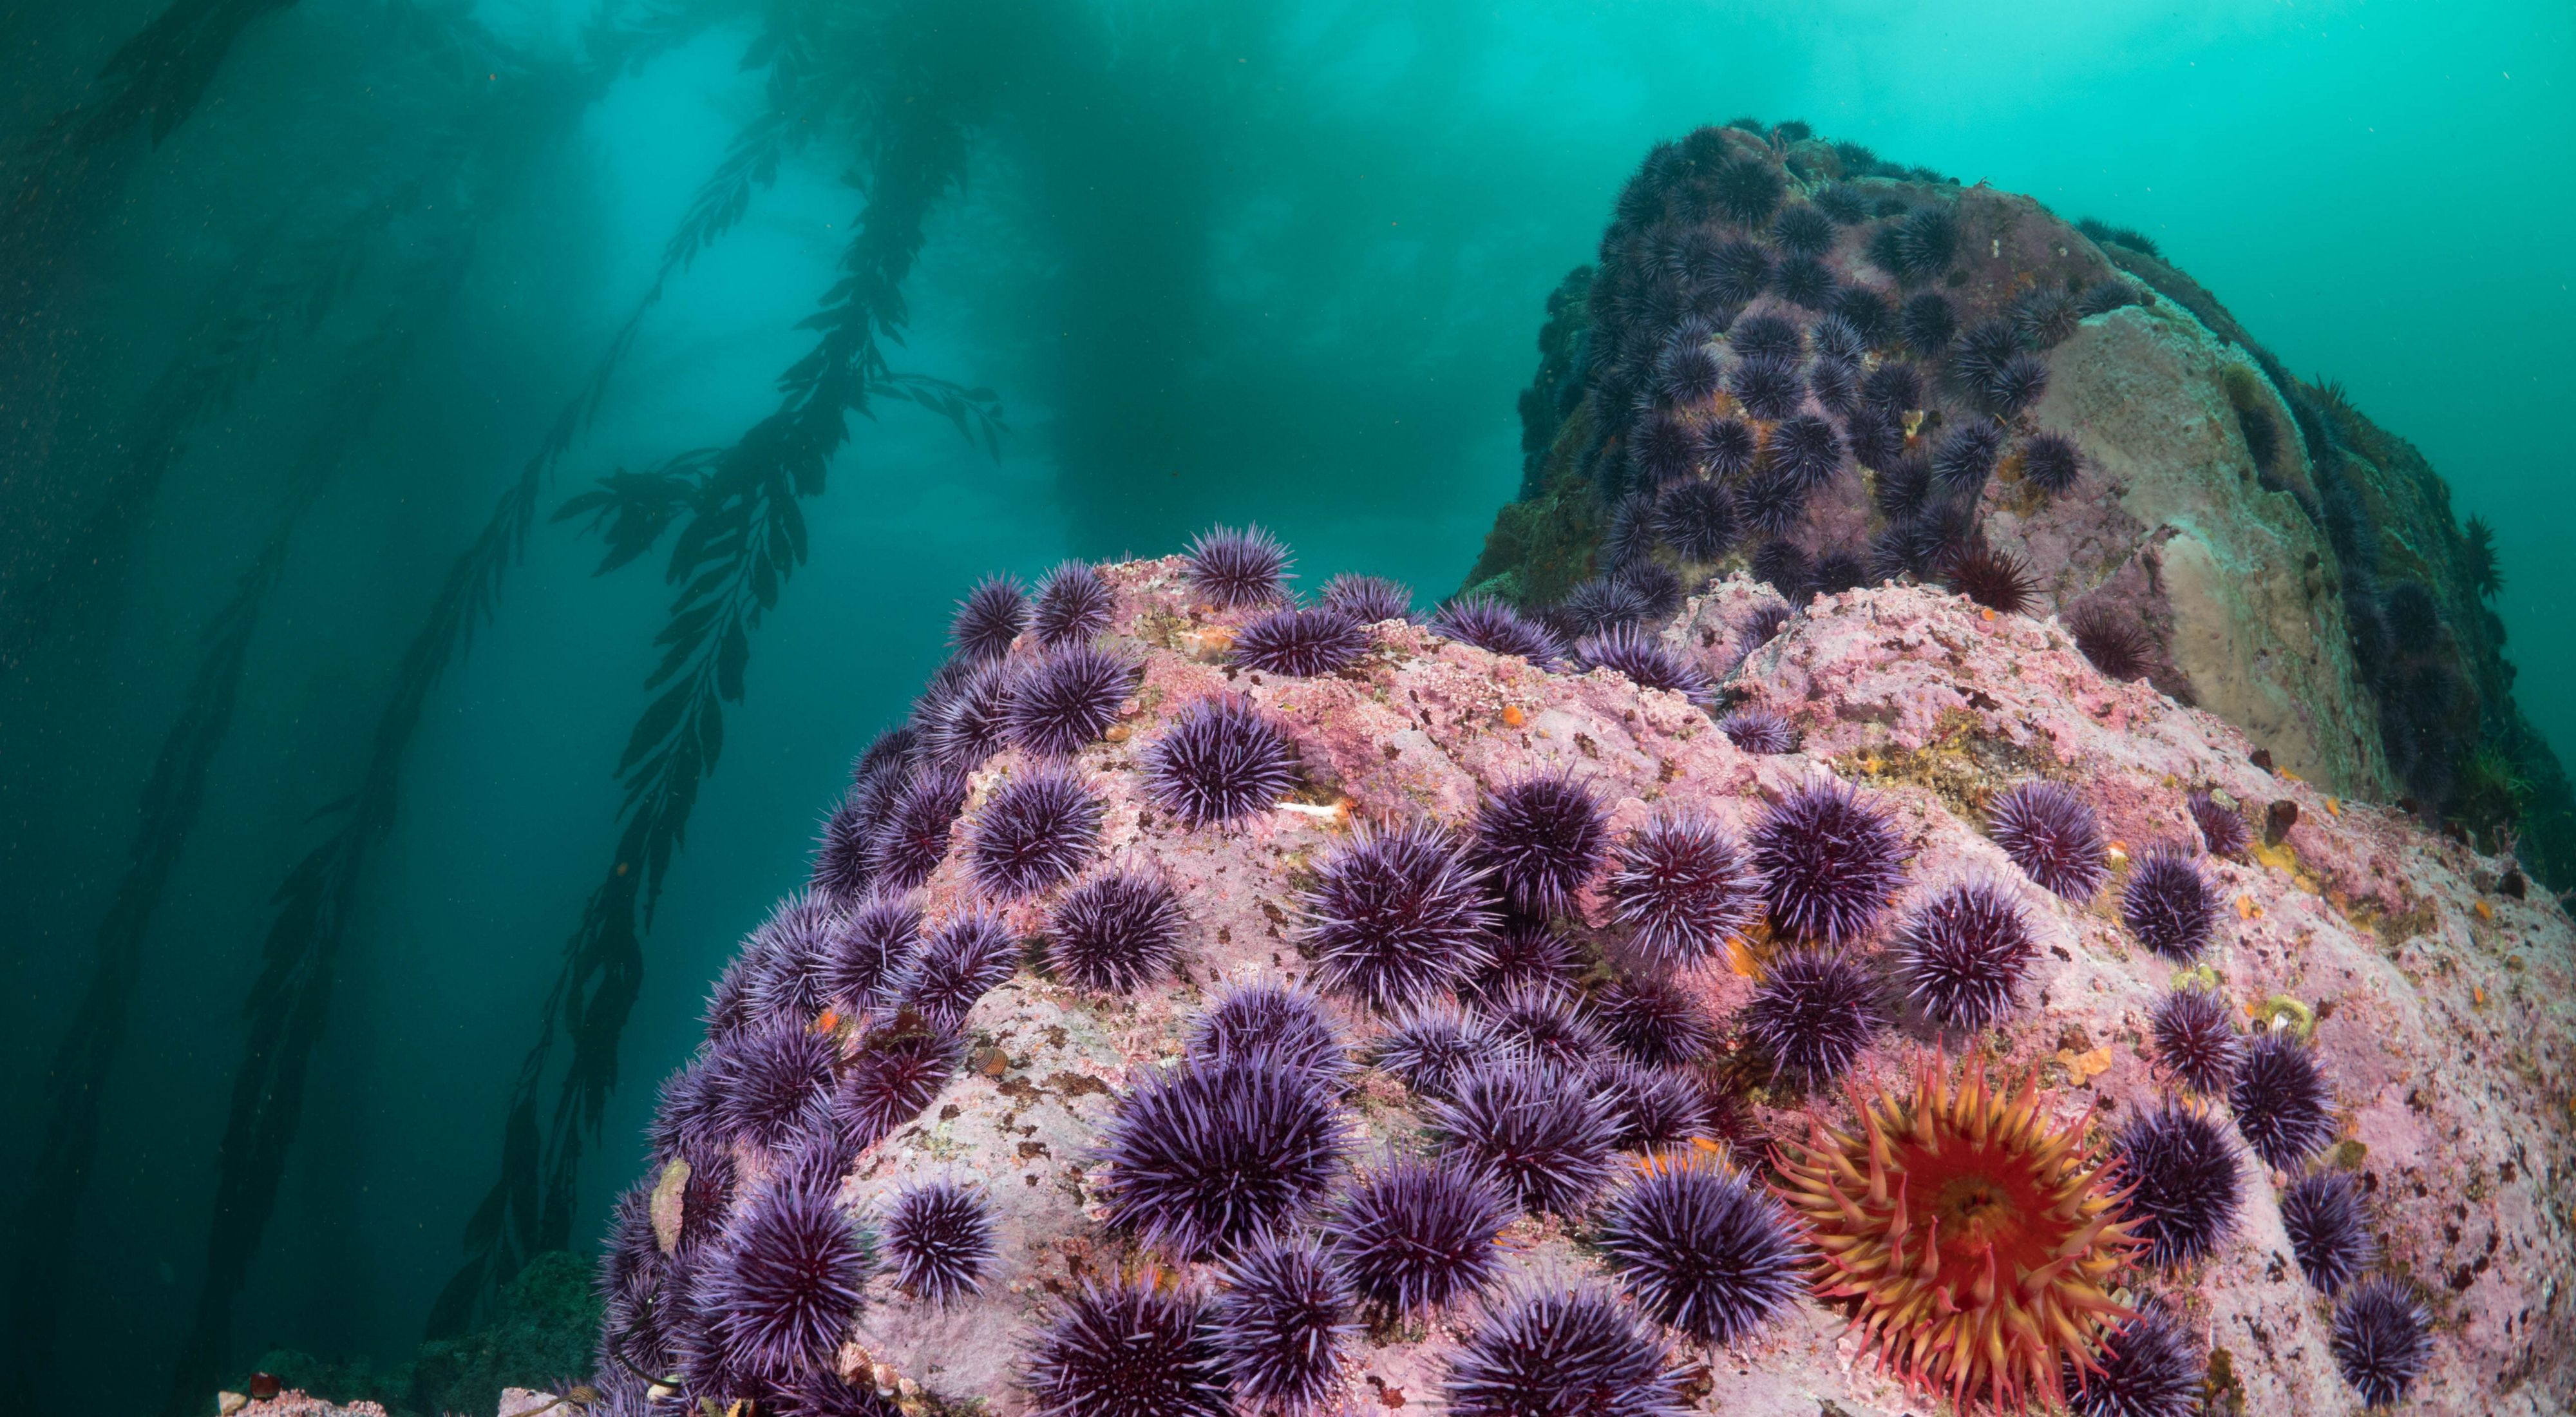 Purple urchin barren near kelp patch on a rock underwater.